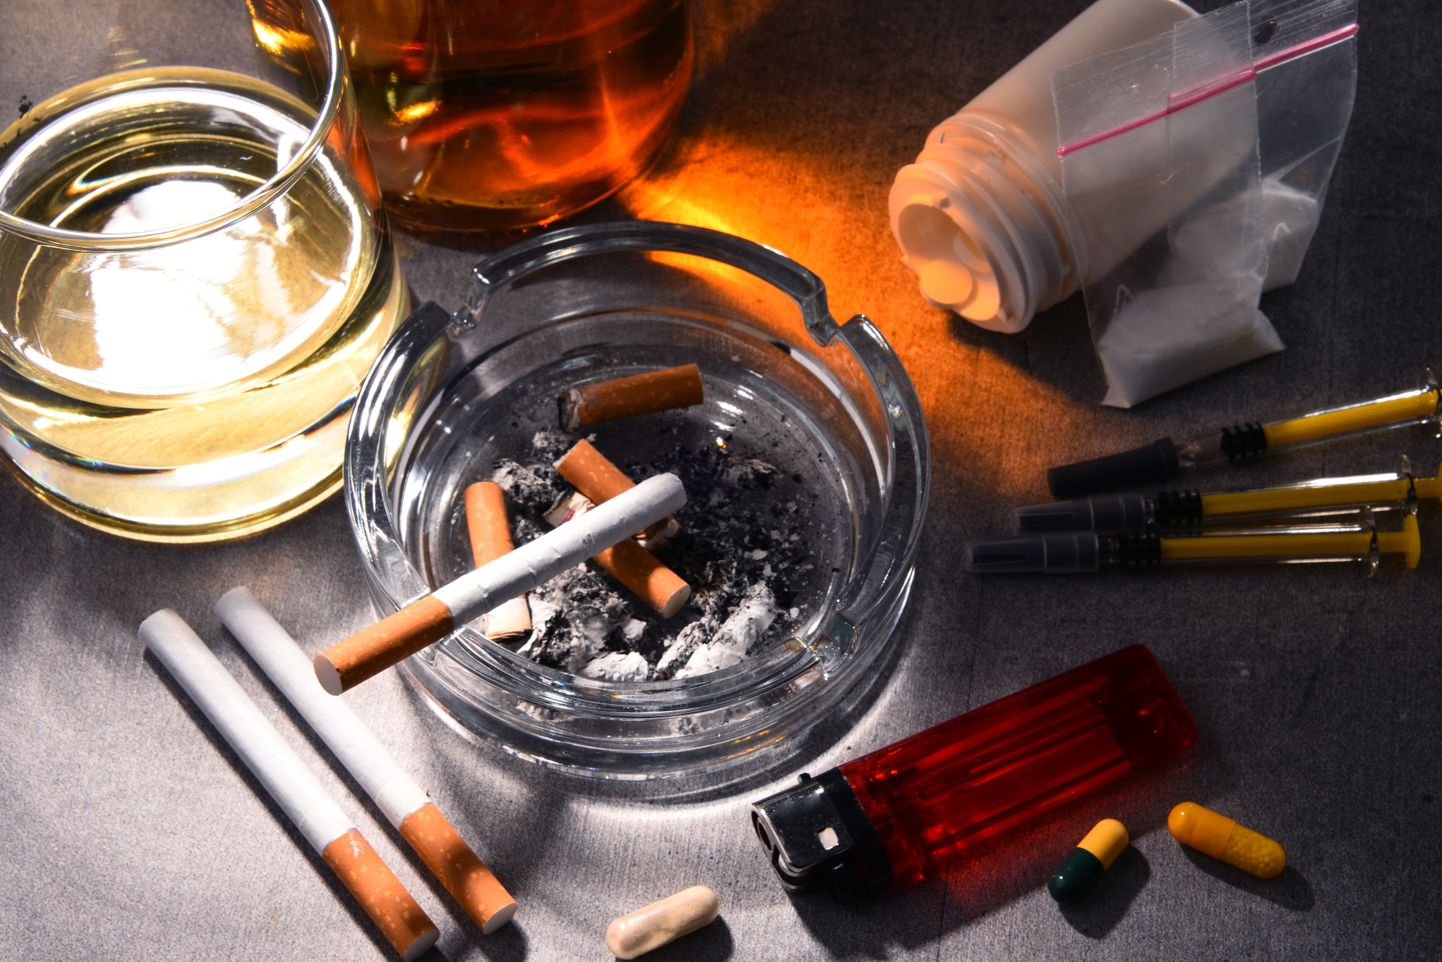 Viie kõige rohkem sõltuvust tekitava aine seas on nii illegaalsed uimastid, kui kõigile kättesaadav alkohol ja tubakas sisalduv nikotiin.